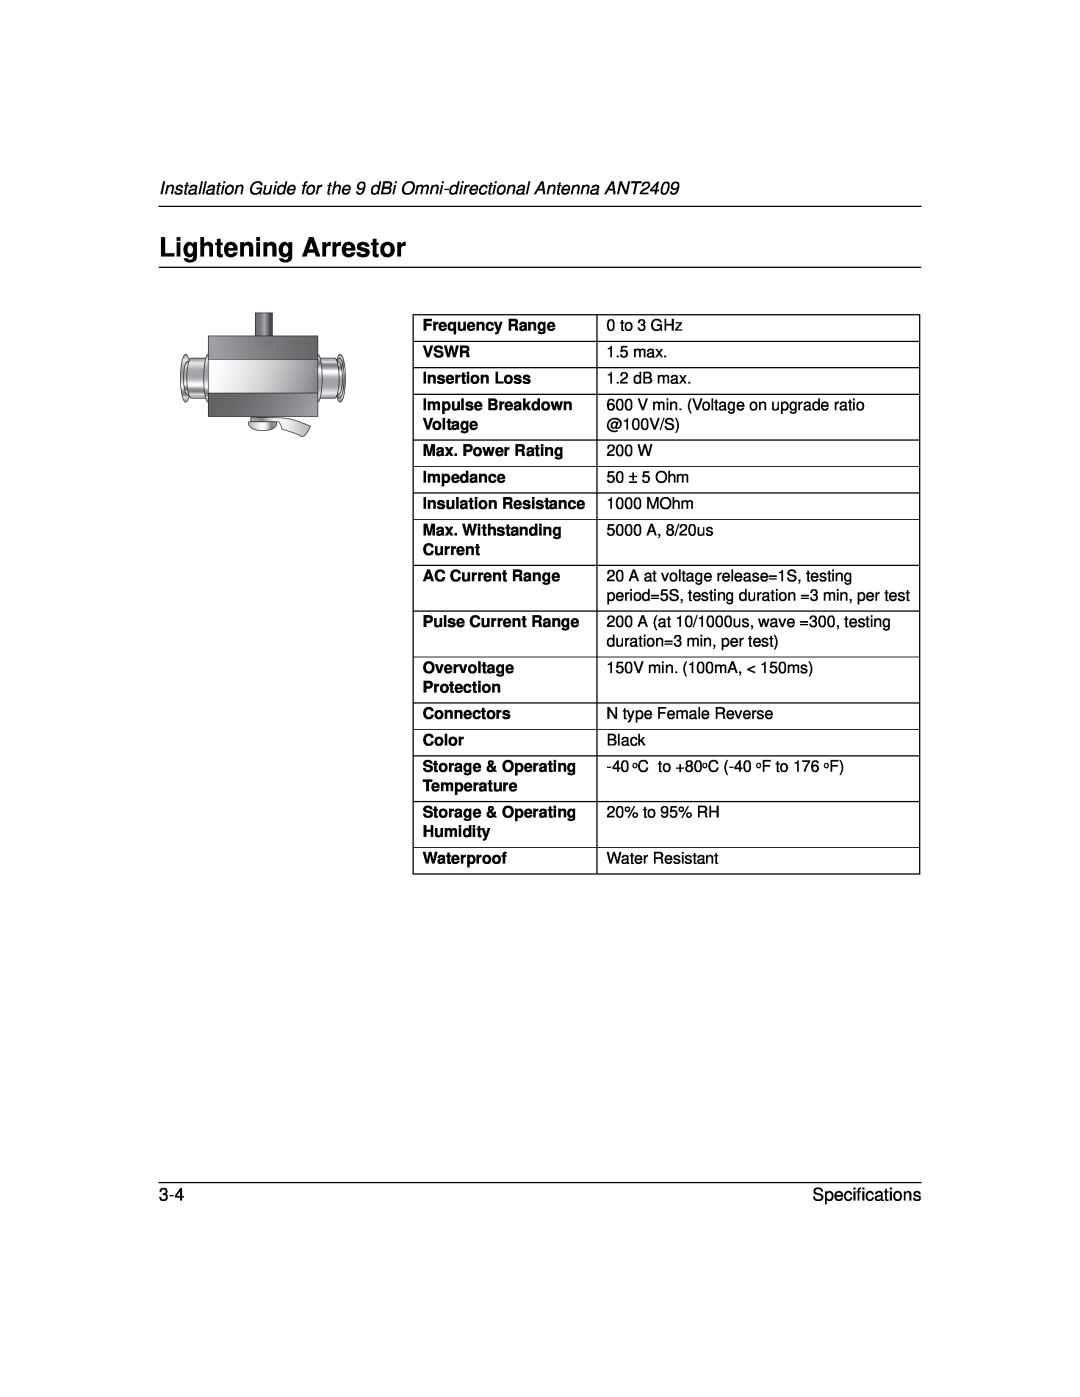 NETGEAR 2409 manual Lightening Arrestor, Specifications 